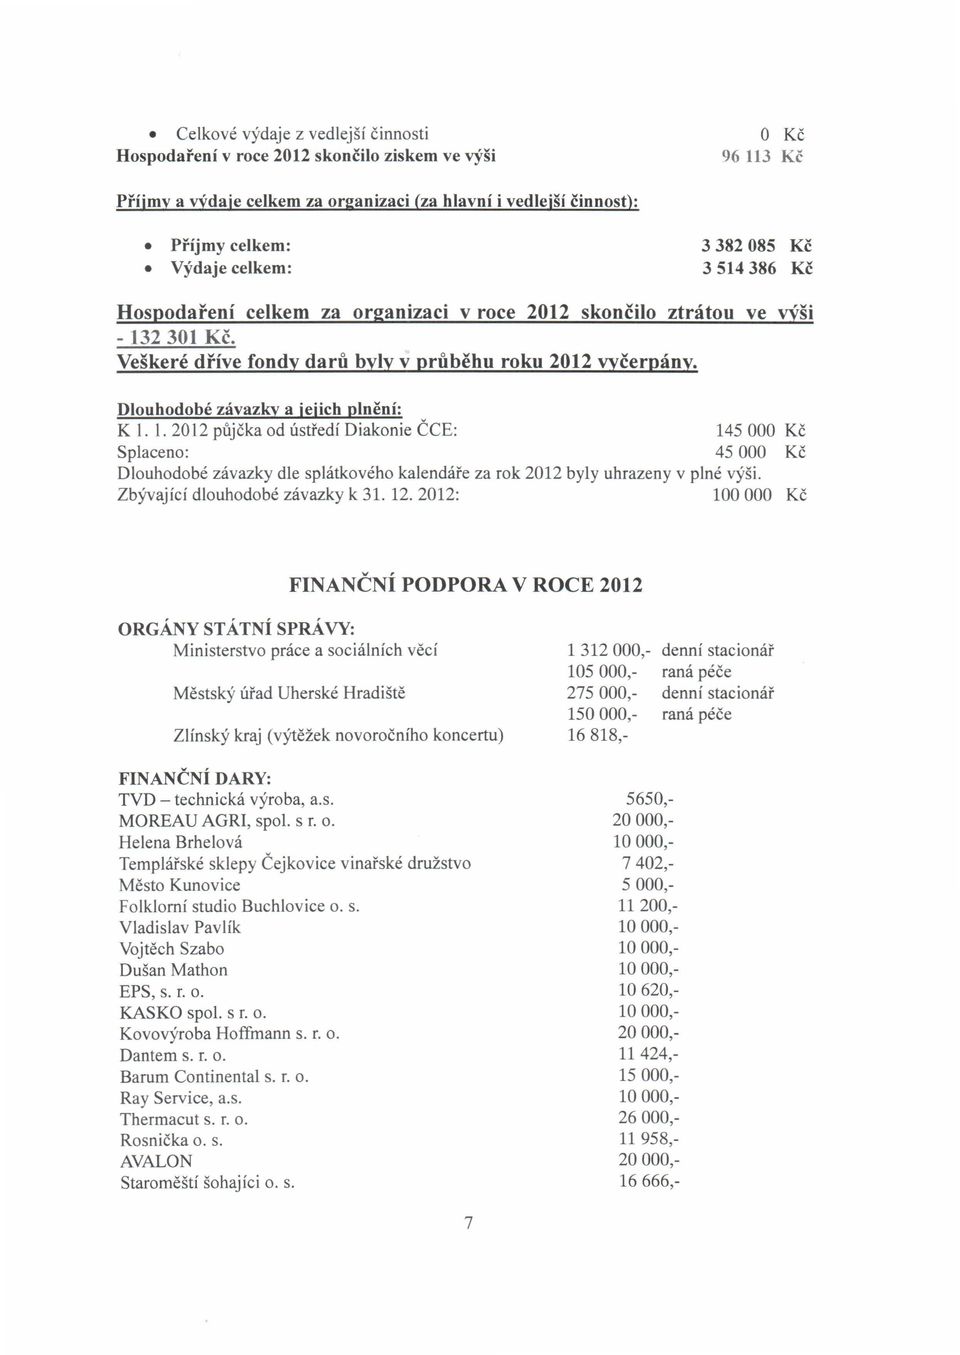 Dlouhodobé závazky a jejich plnění: KLL 2012 půjčka od ústředí Diakonie ČCE: 145000 Kč Splaceno: 45 000 Kč Dlouhodobé závazky dle splátkového kalendáře za rok 2012 byly uhrazeny v plné výši.